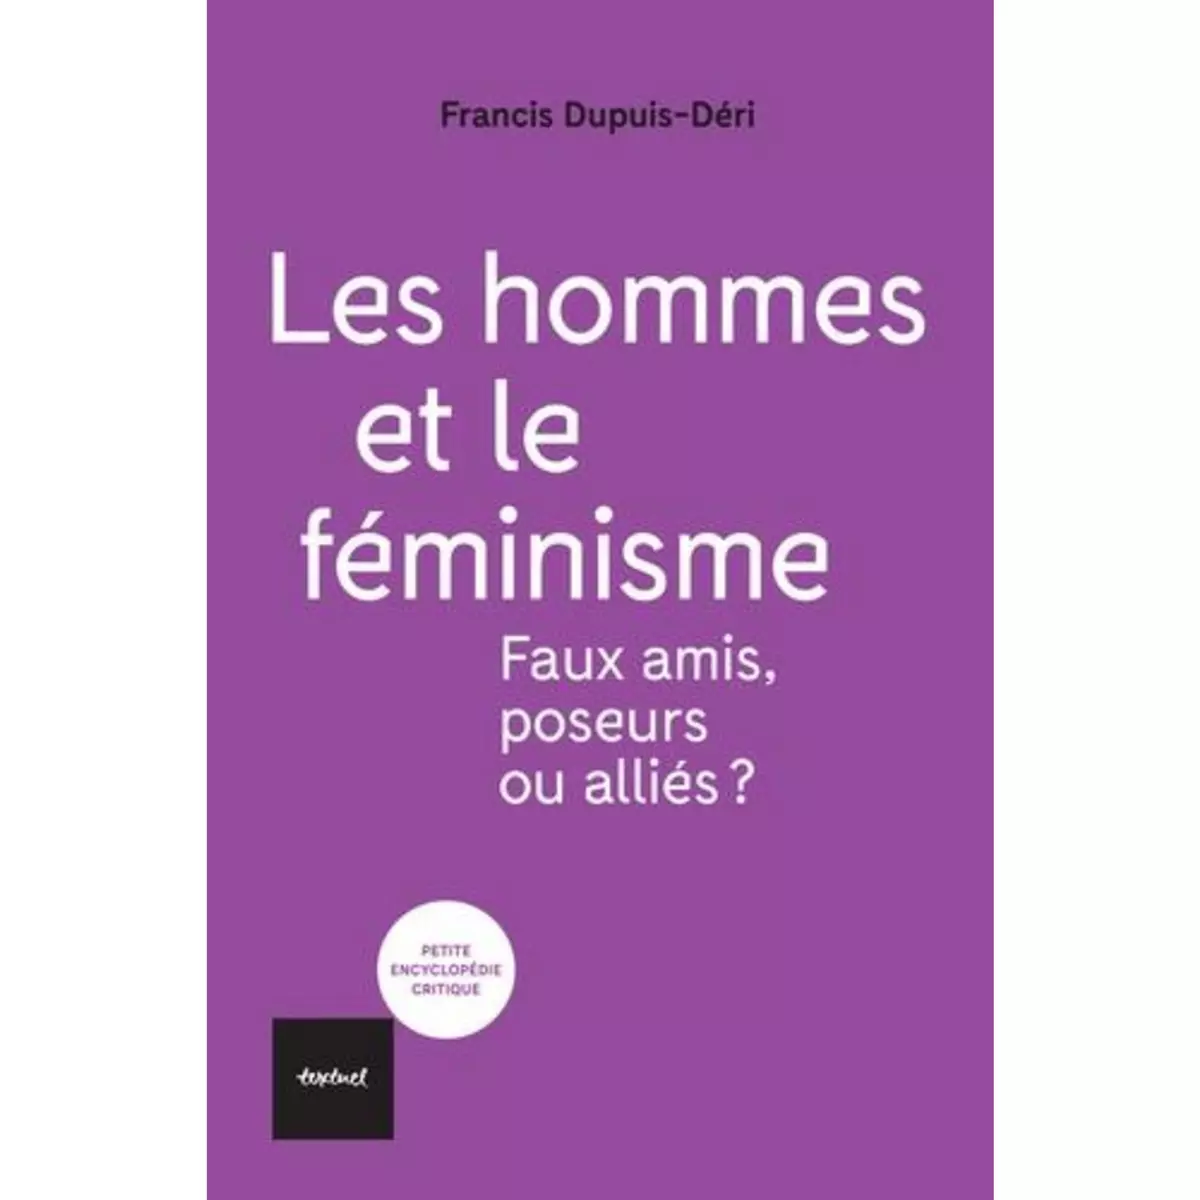  LES HOMMES ET LE FEMINISME. FAUX AMIS, POSEURS OU ALLIES ?, Dupuis-Déri Francis